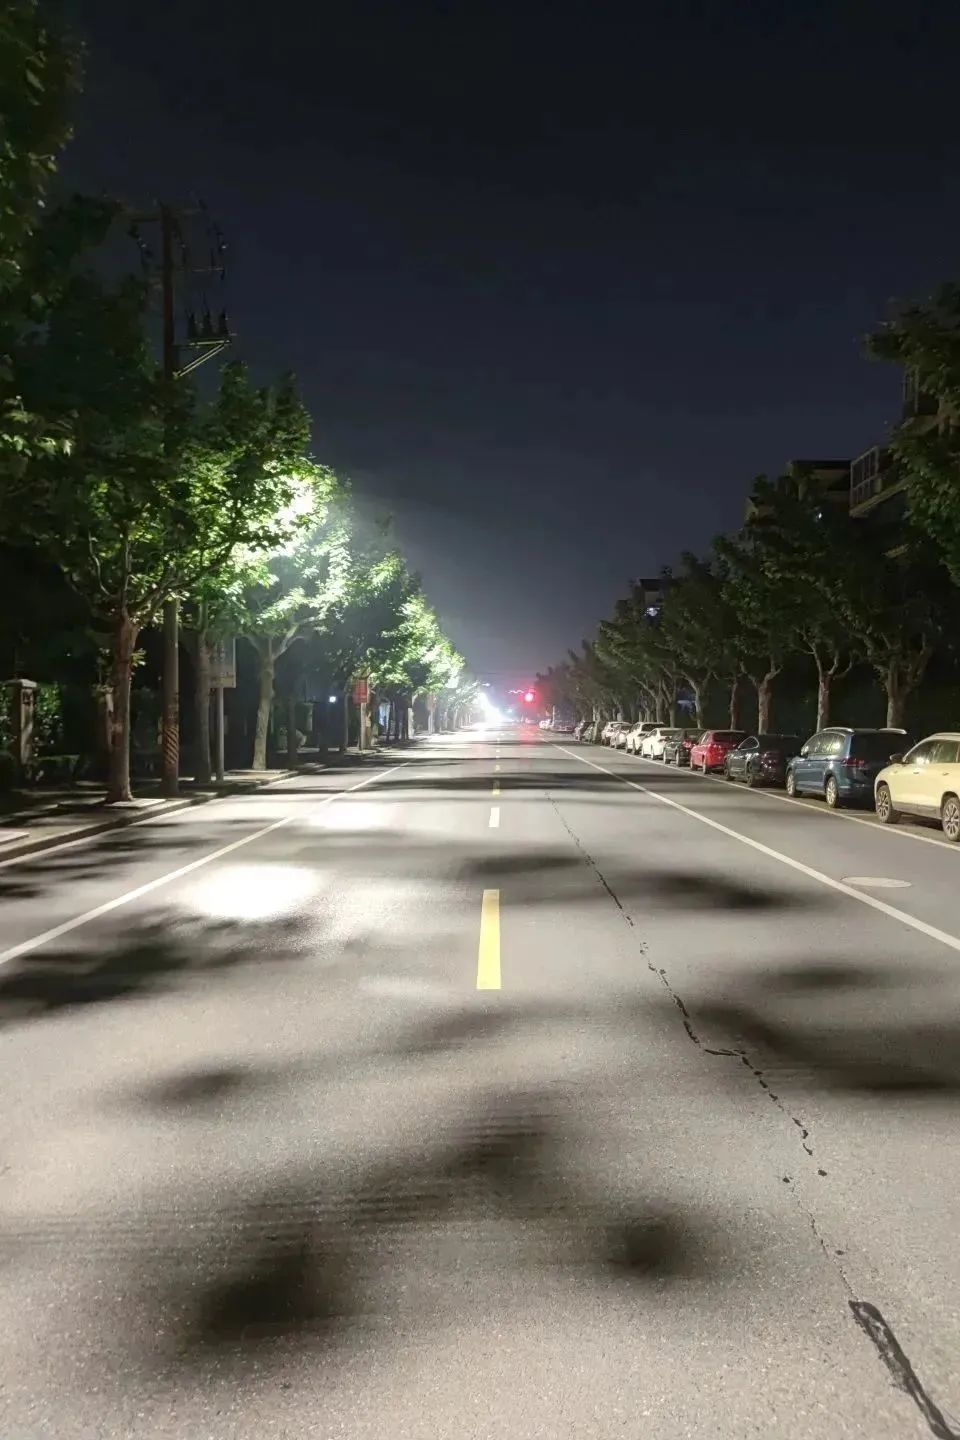 上海嘉定区区管道路照明设施节能改造工程正式启动